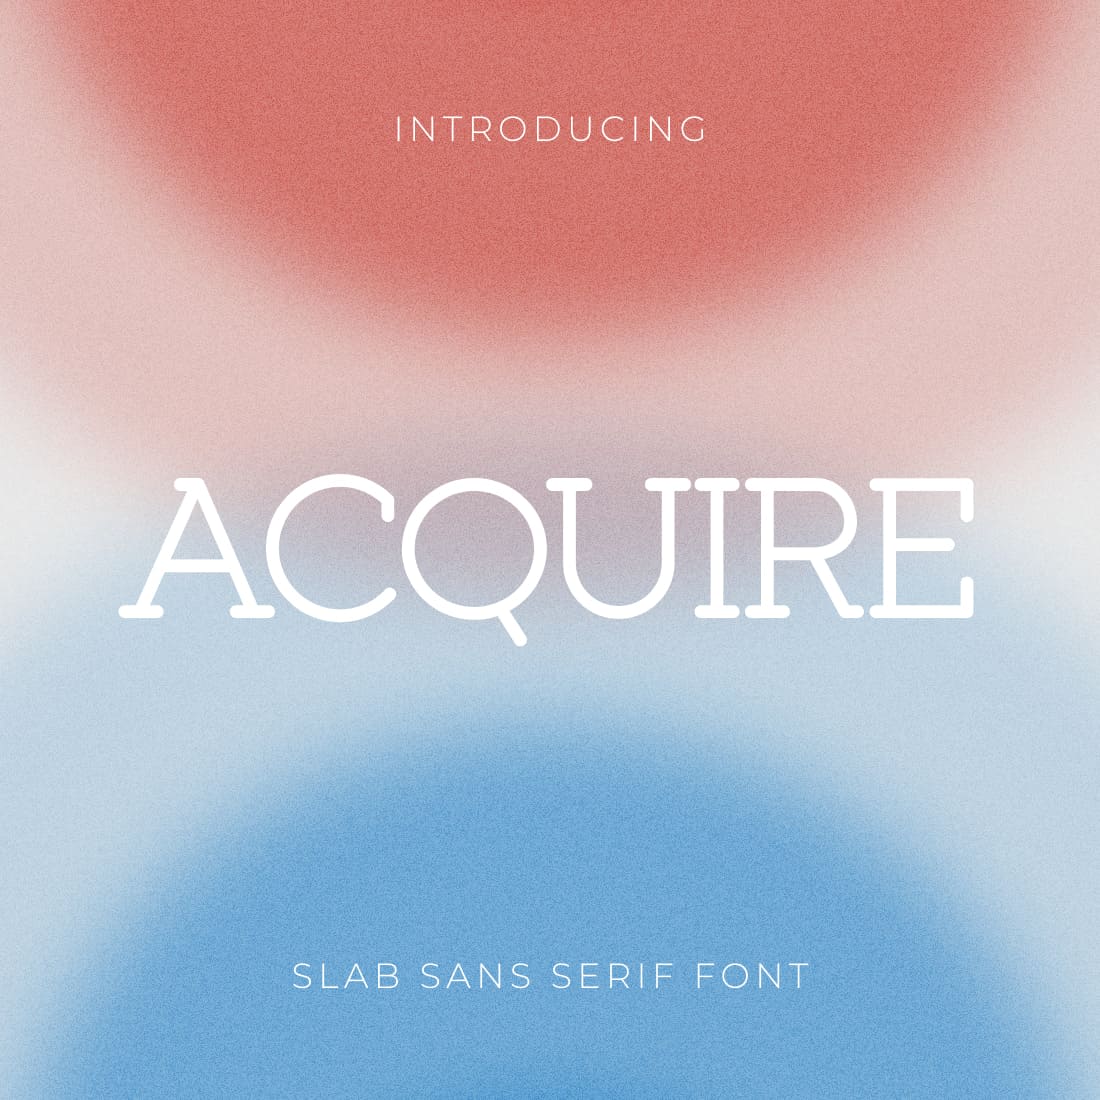 Acquire slab sans serif font main cover.